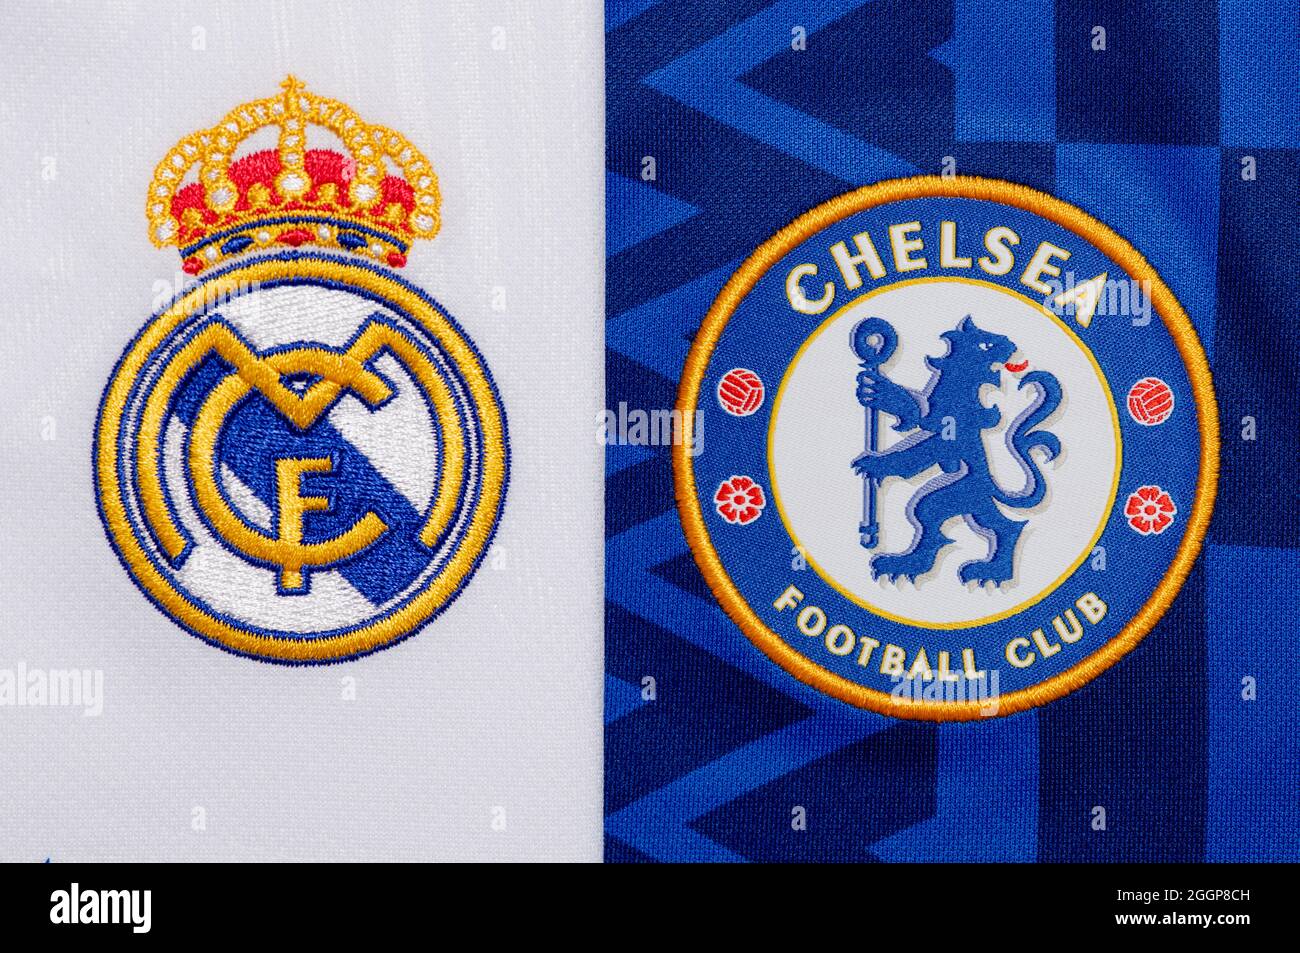 Nahaufnahme des Vereinswappens von Real Madrid & Chelsea FC. Stockfoto